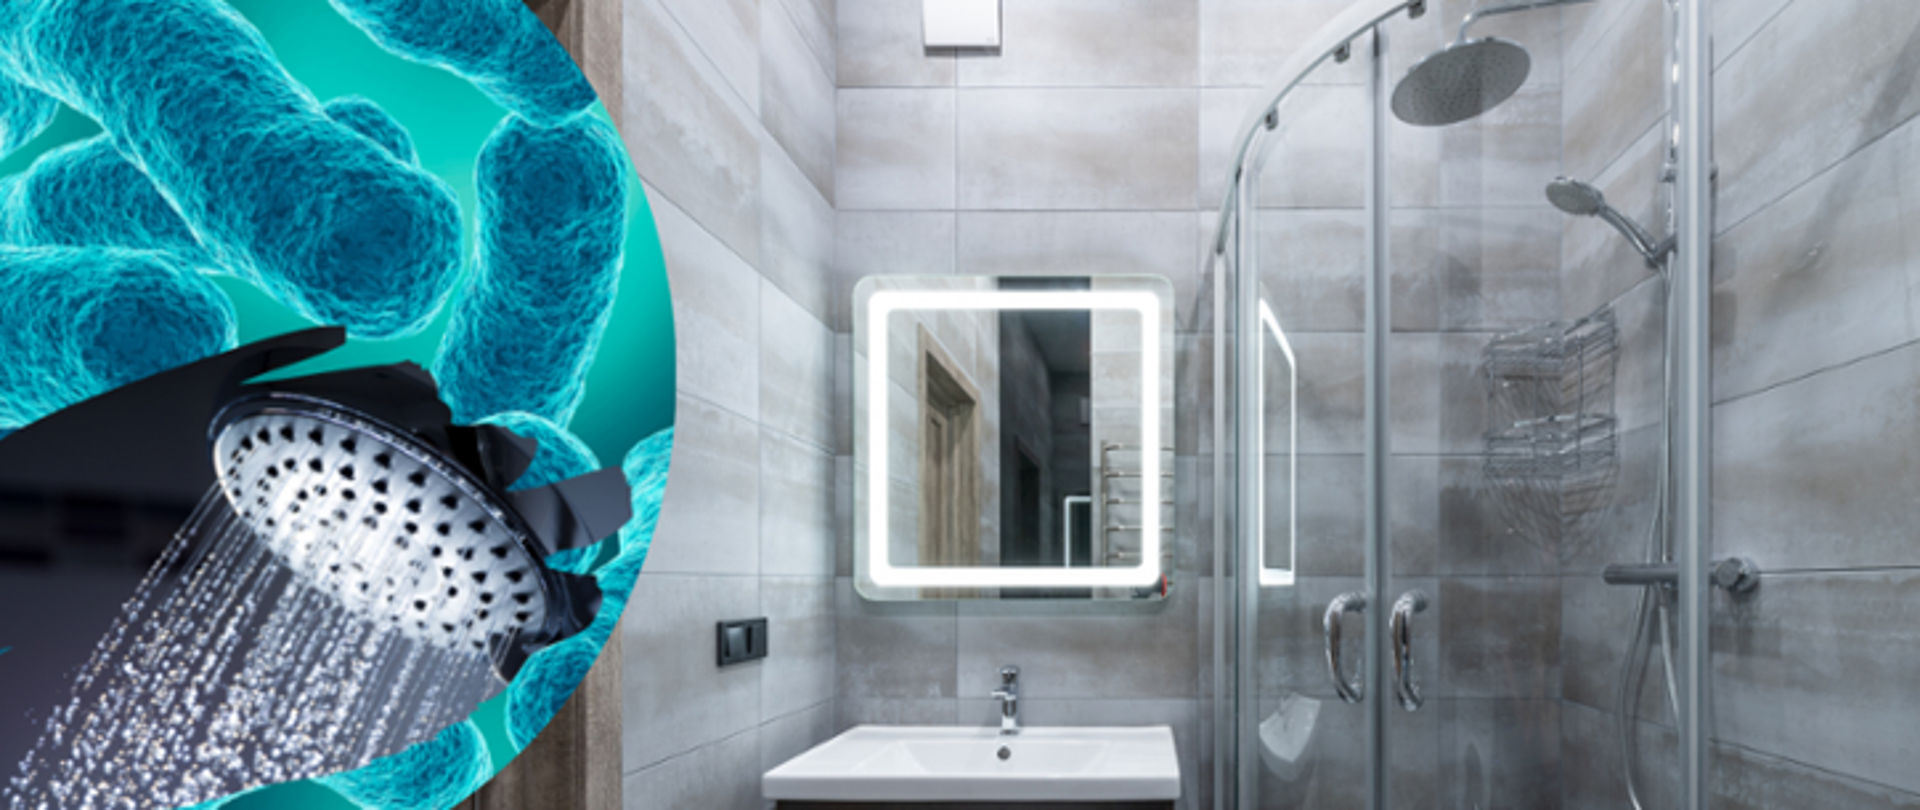 Po lewej stronie bakterie z rodzaju Legionella oraz głowica prysznicowa. Po prawej stronie widok szarej łazienki z umywalką i lustrem oraz kabiną prysznicową.